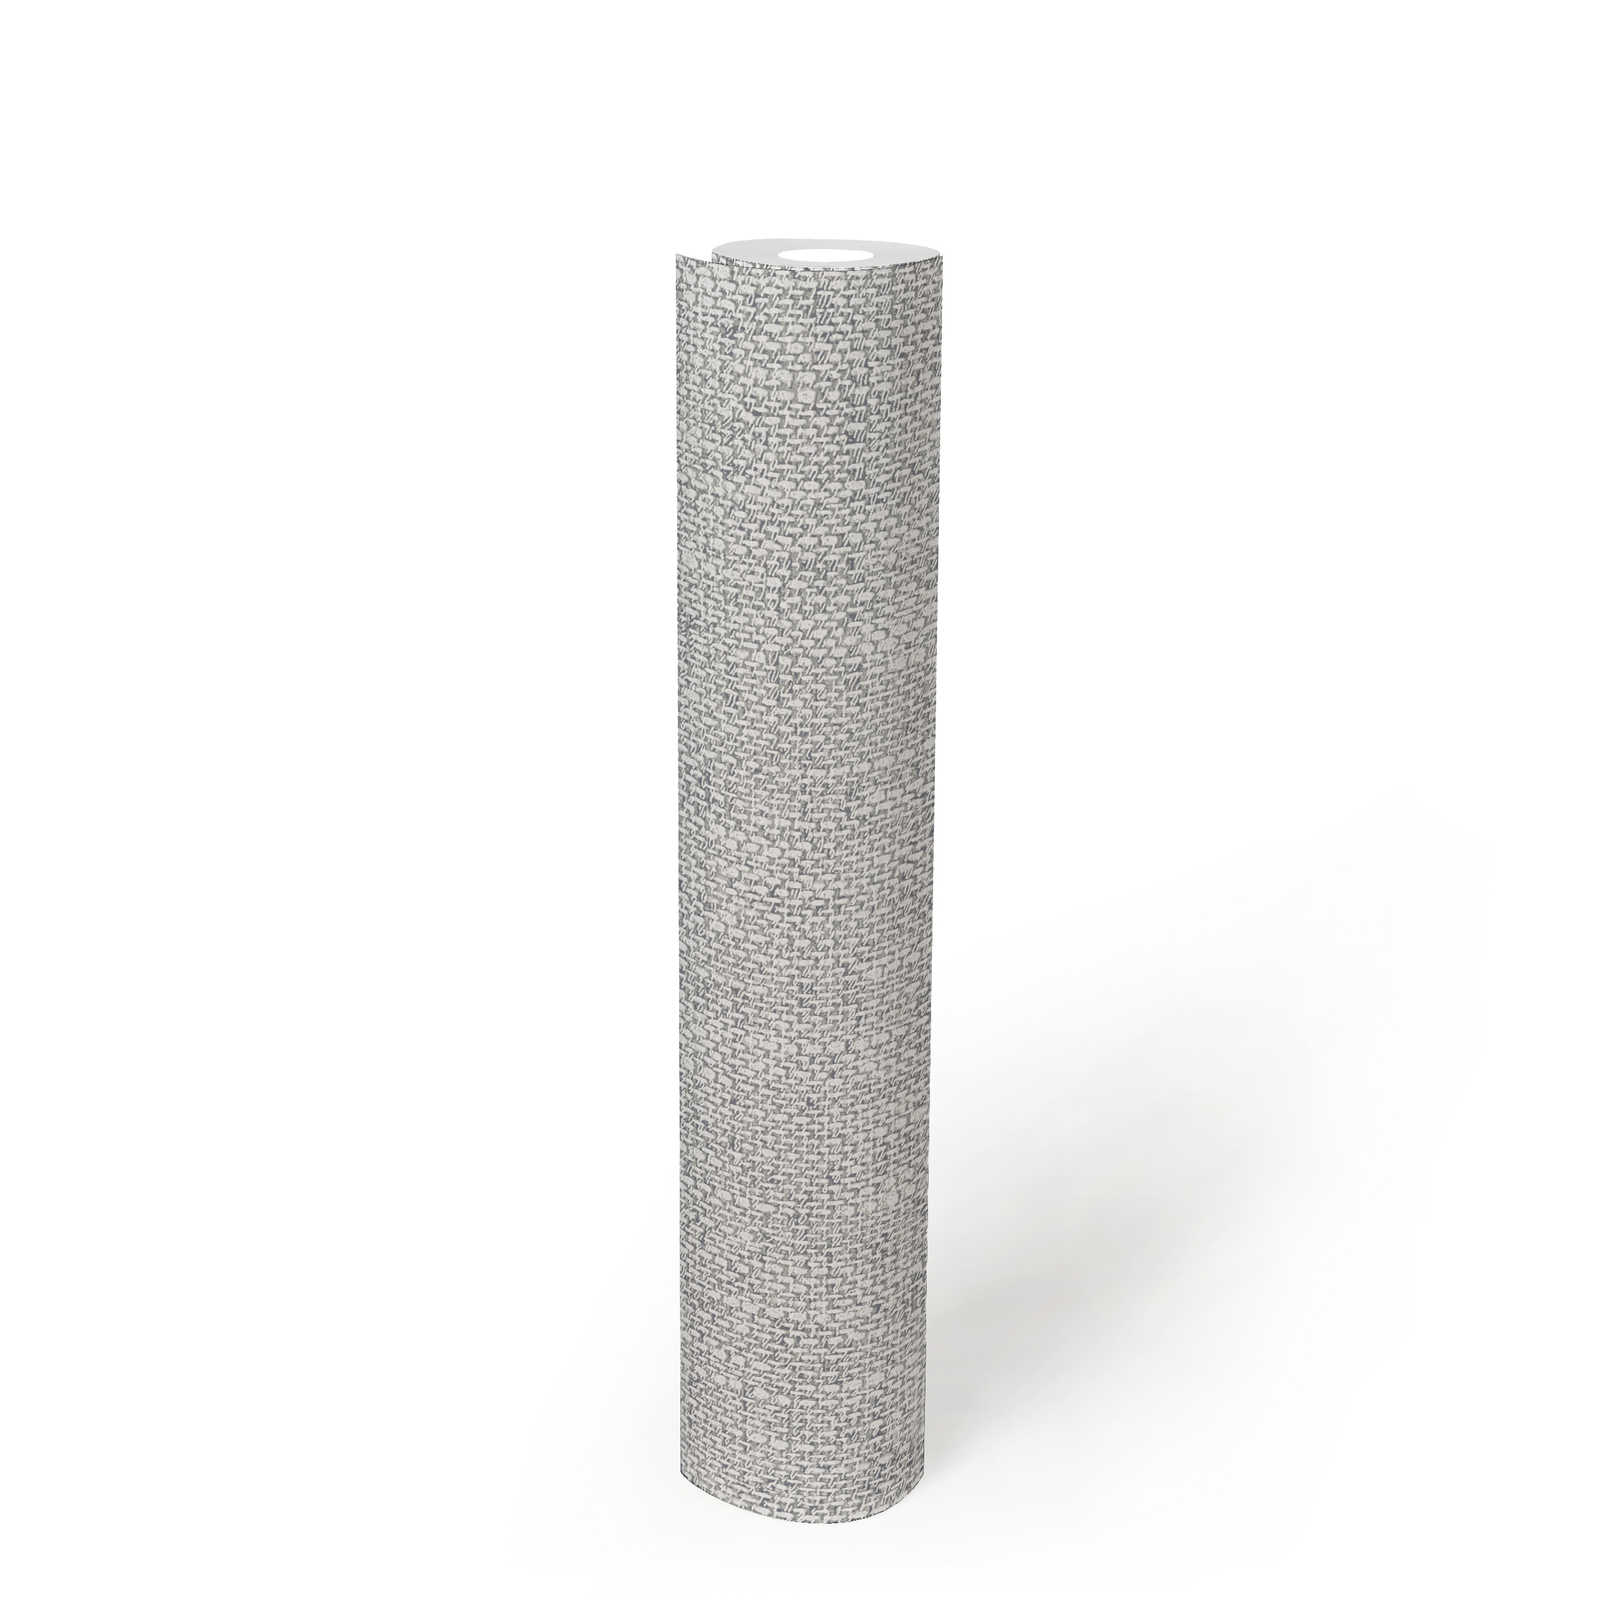             Vliesbehang met realistische stofuitstraling - grijs, wit
        